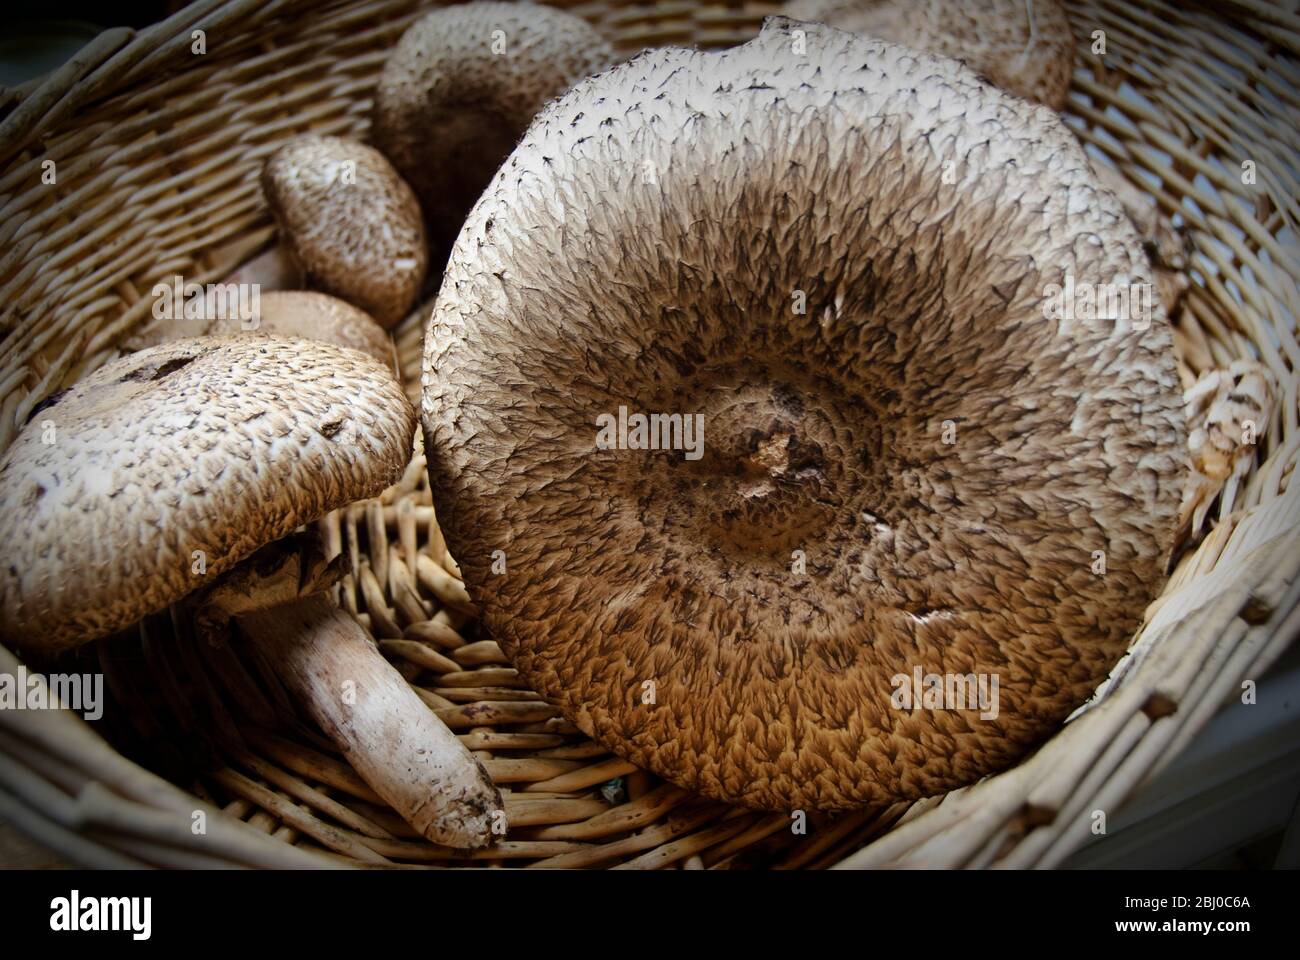 Frisch gesammelter Agaricus augustus, auch bekannt als 'der Prinz', ein Pilz der Gattung Agaricus in einem Weidenkorb. - Stockfoto